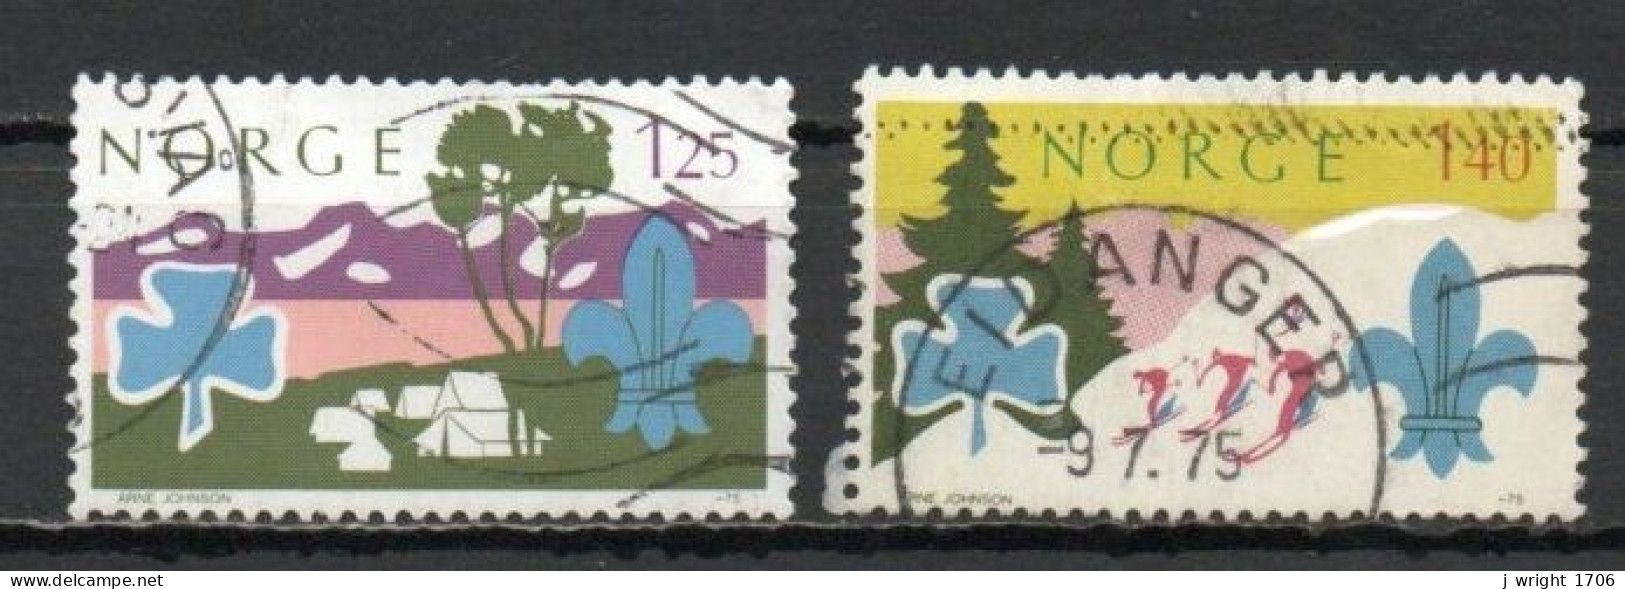 Norway, 1975, World Scout Jamboree, Set, USED - Usados